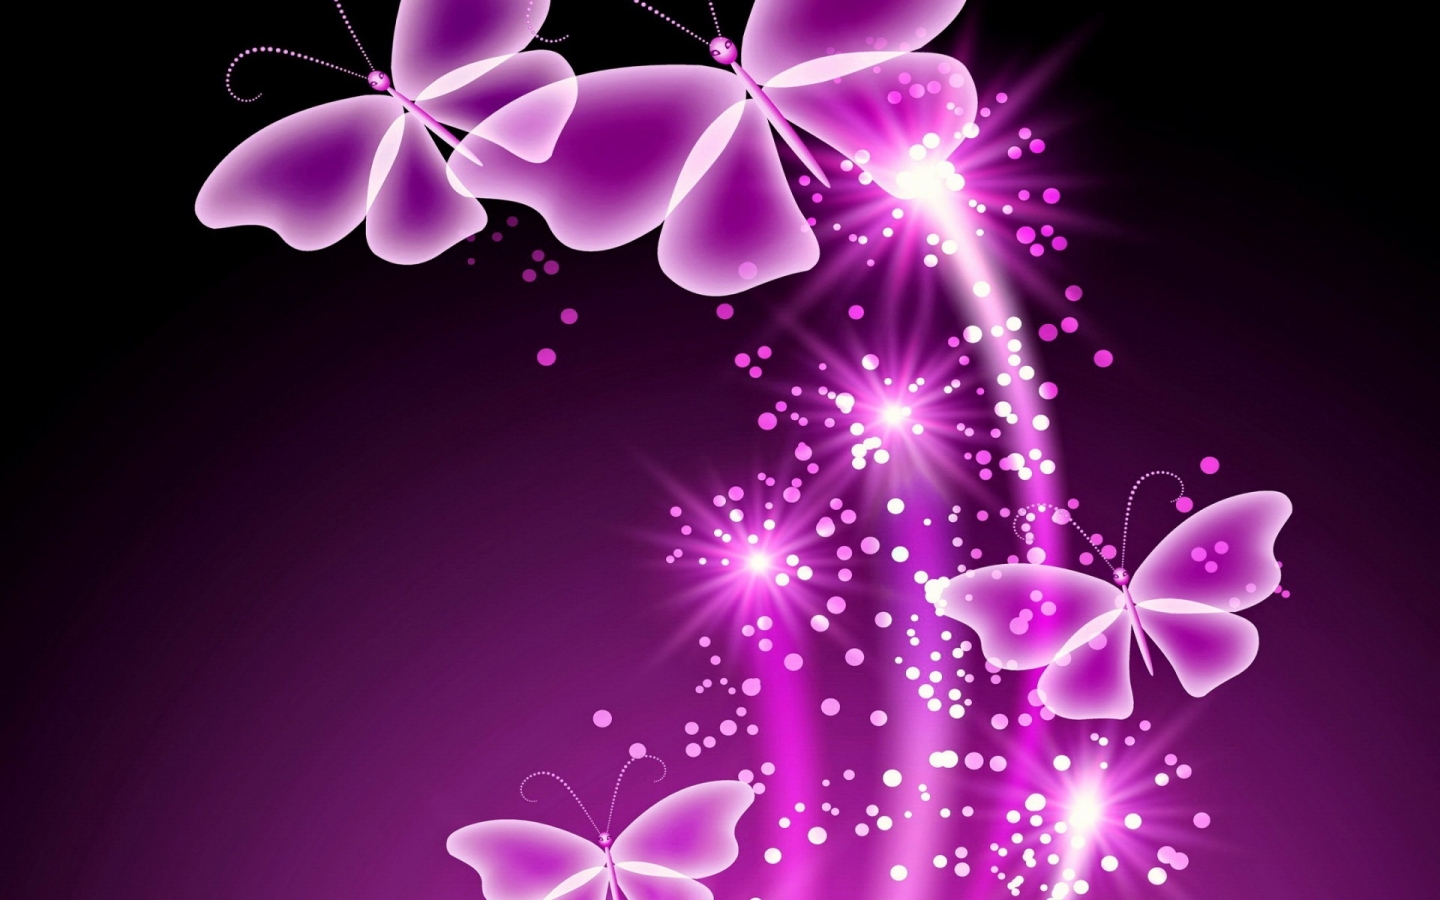 Purple Butterflies for 1440 x 900 widescreen resolution